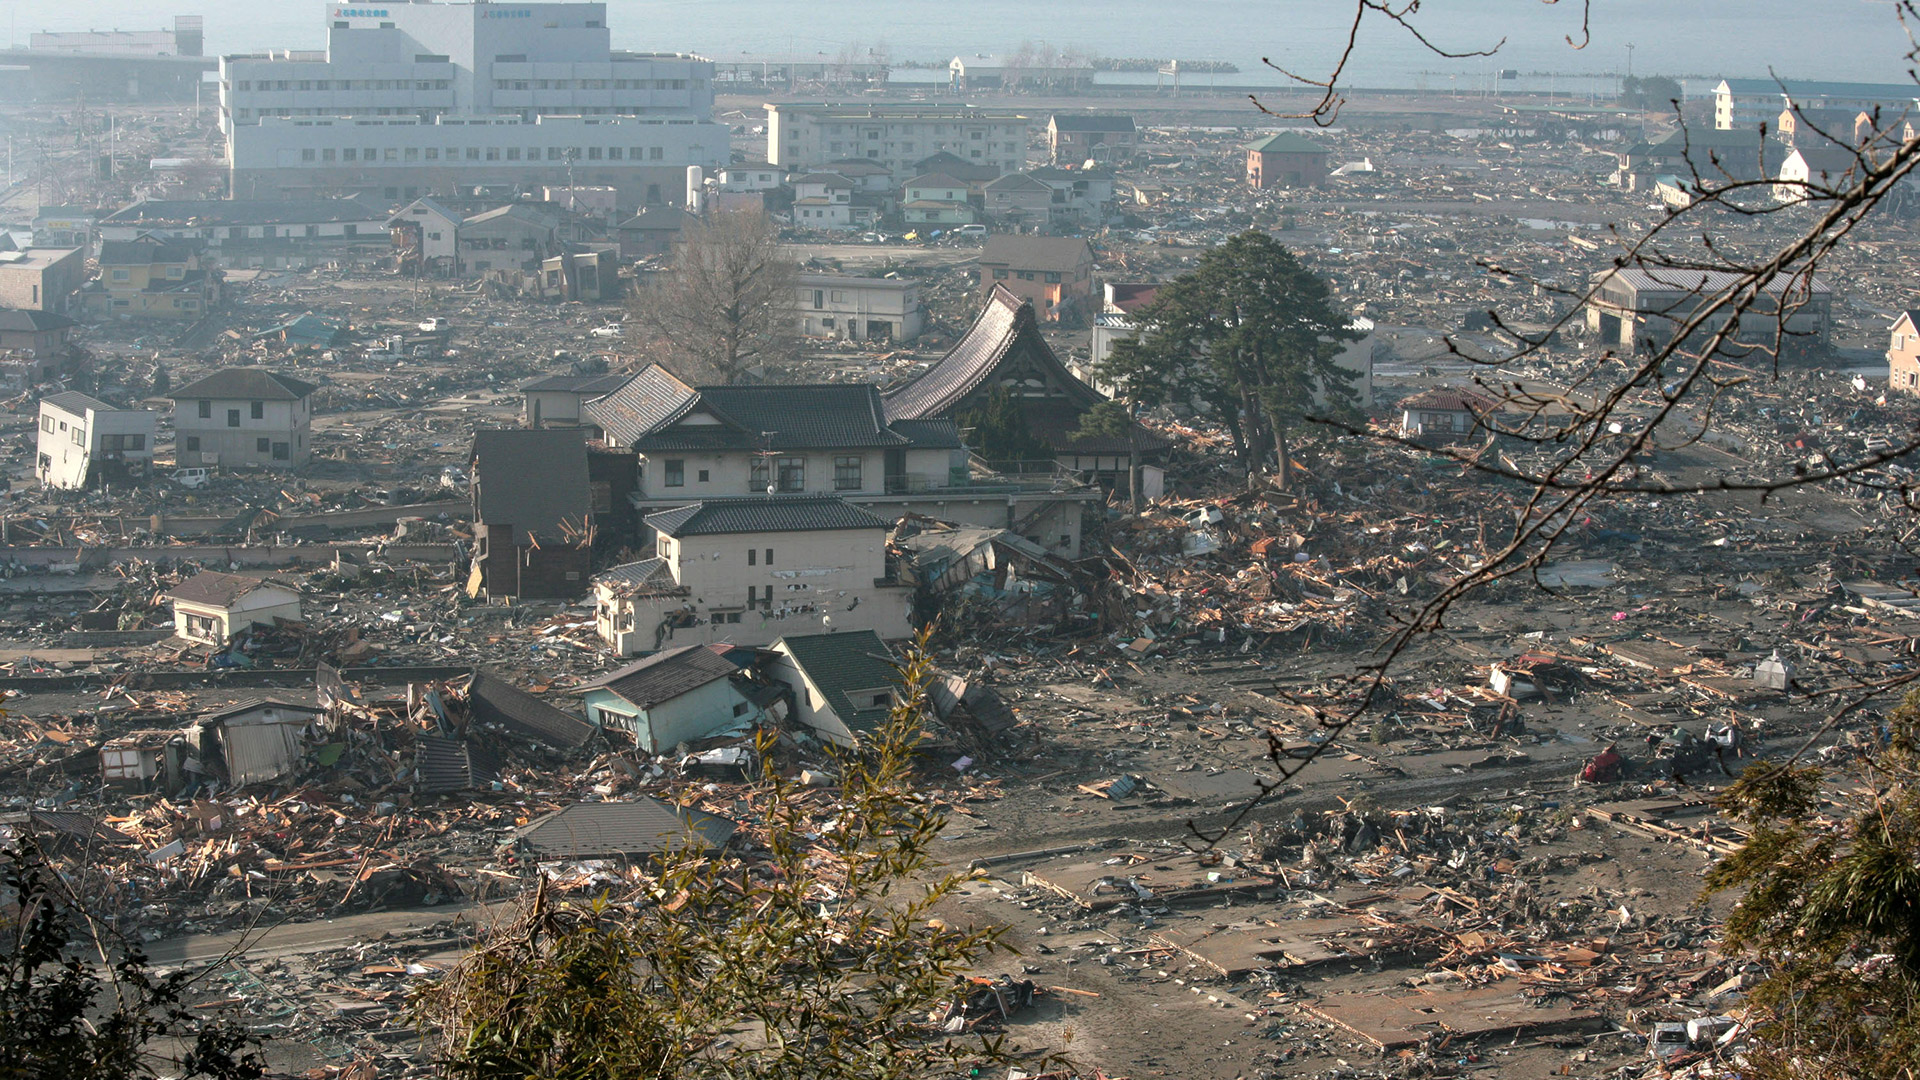 El desastre ocurrido en marzo de 2011 en el noreste de Japón dejó unos 18.500 muertos o desaparecidos, en su mayoría víctimas del tsunami. (GETTY)